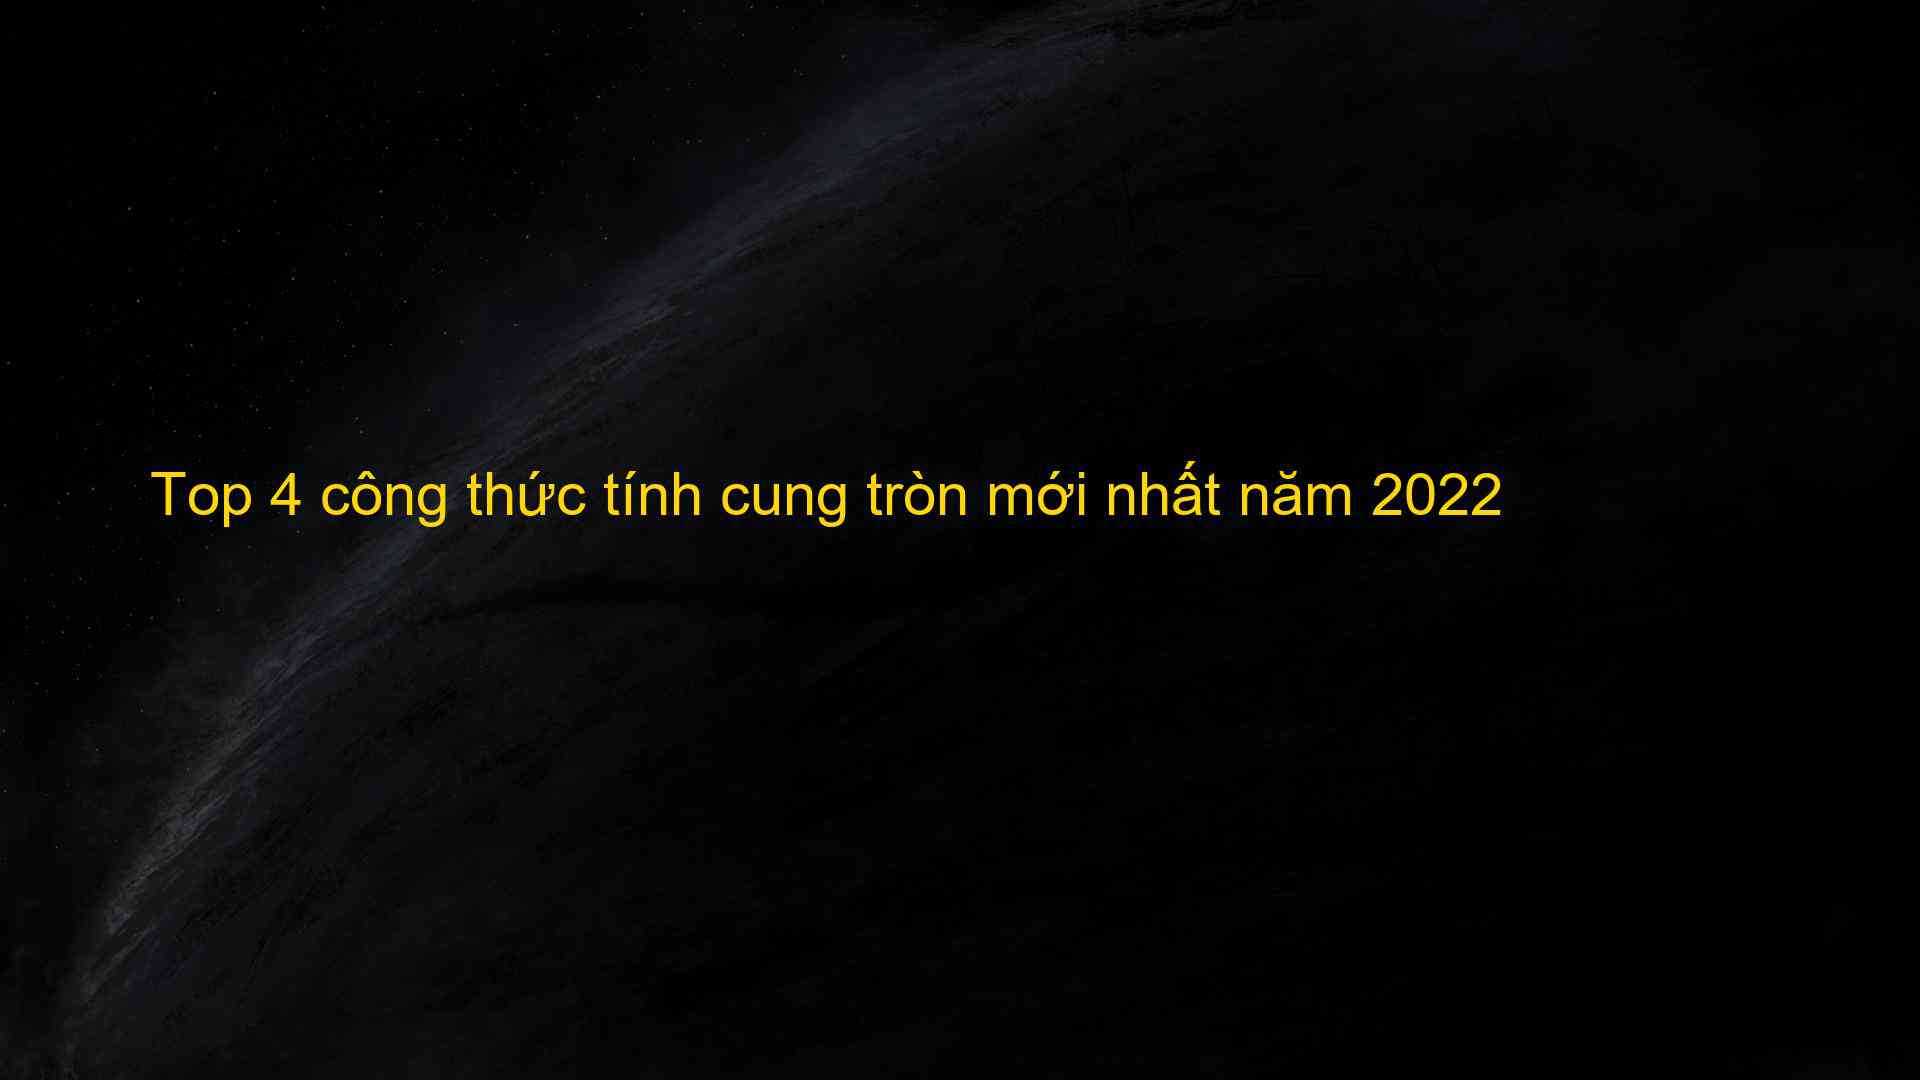 Top 4 cong thuc tinh cung tron moi nhat nam 2022 1659837173